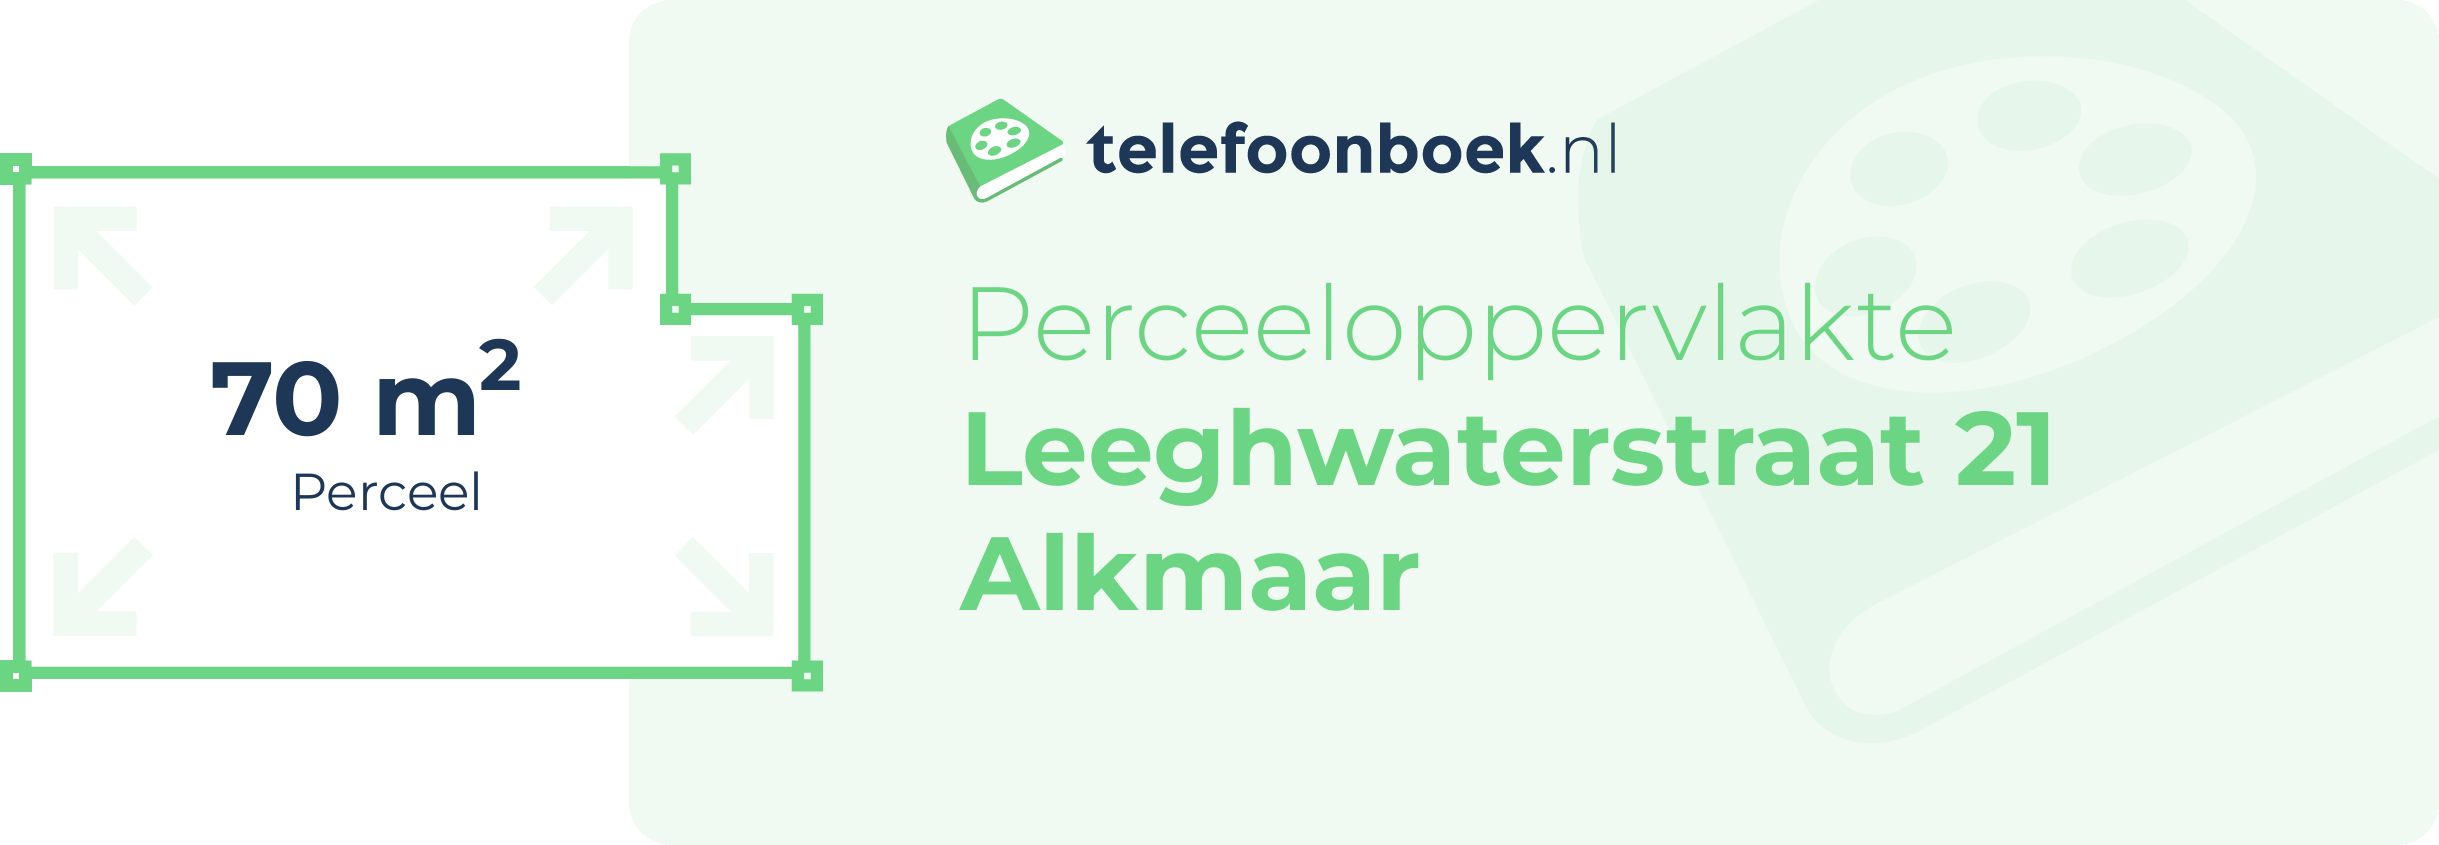 Perceeloppervlakte Leeghwaterstraat 21 Alkmaar